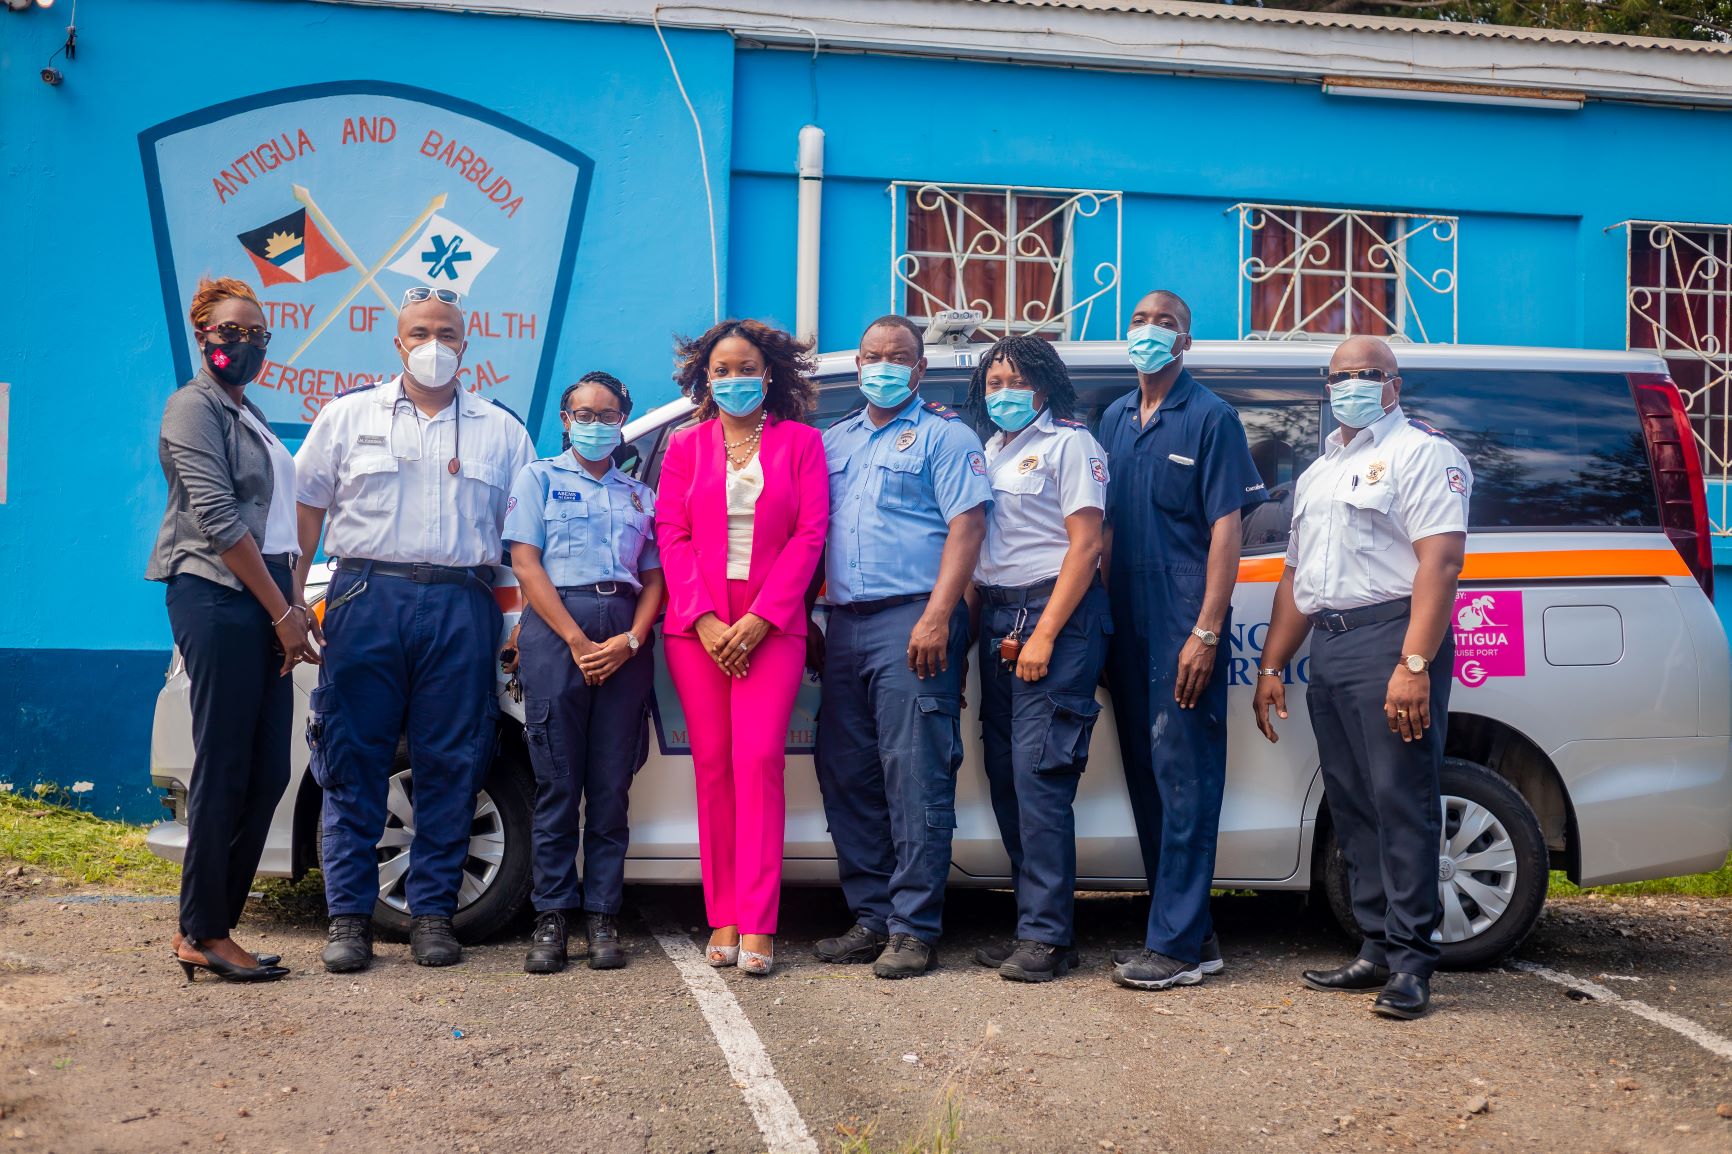 Antigua Cruise Port Donates Emergency Response Vehicle to Emergency Medical Services